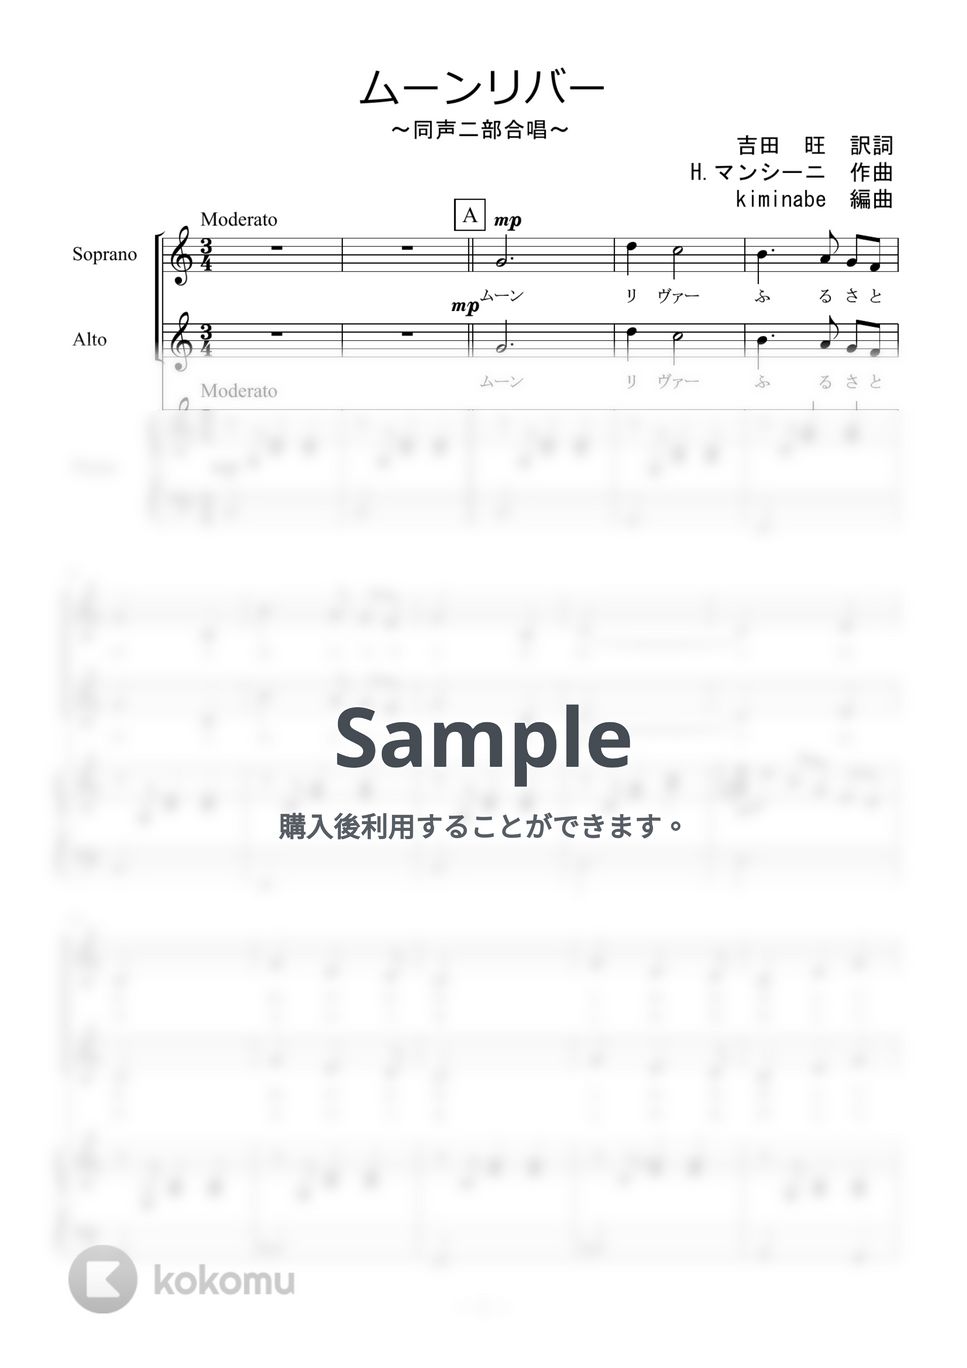 ヘンリー・マンシーニ - ムーンリバー (同声二部合唱) by kiminabe